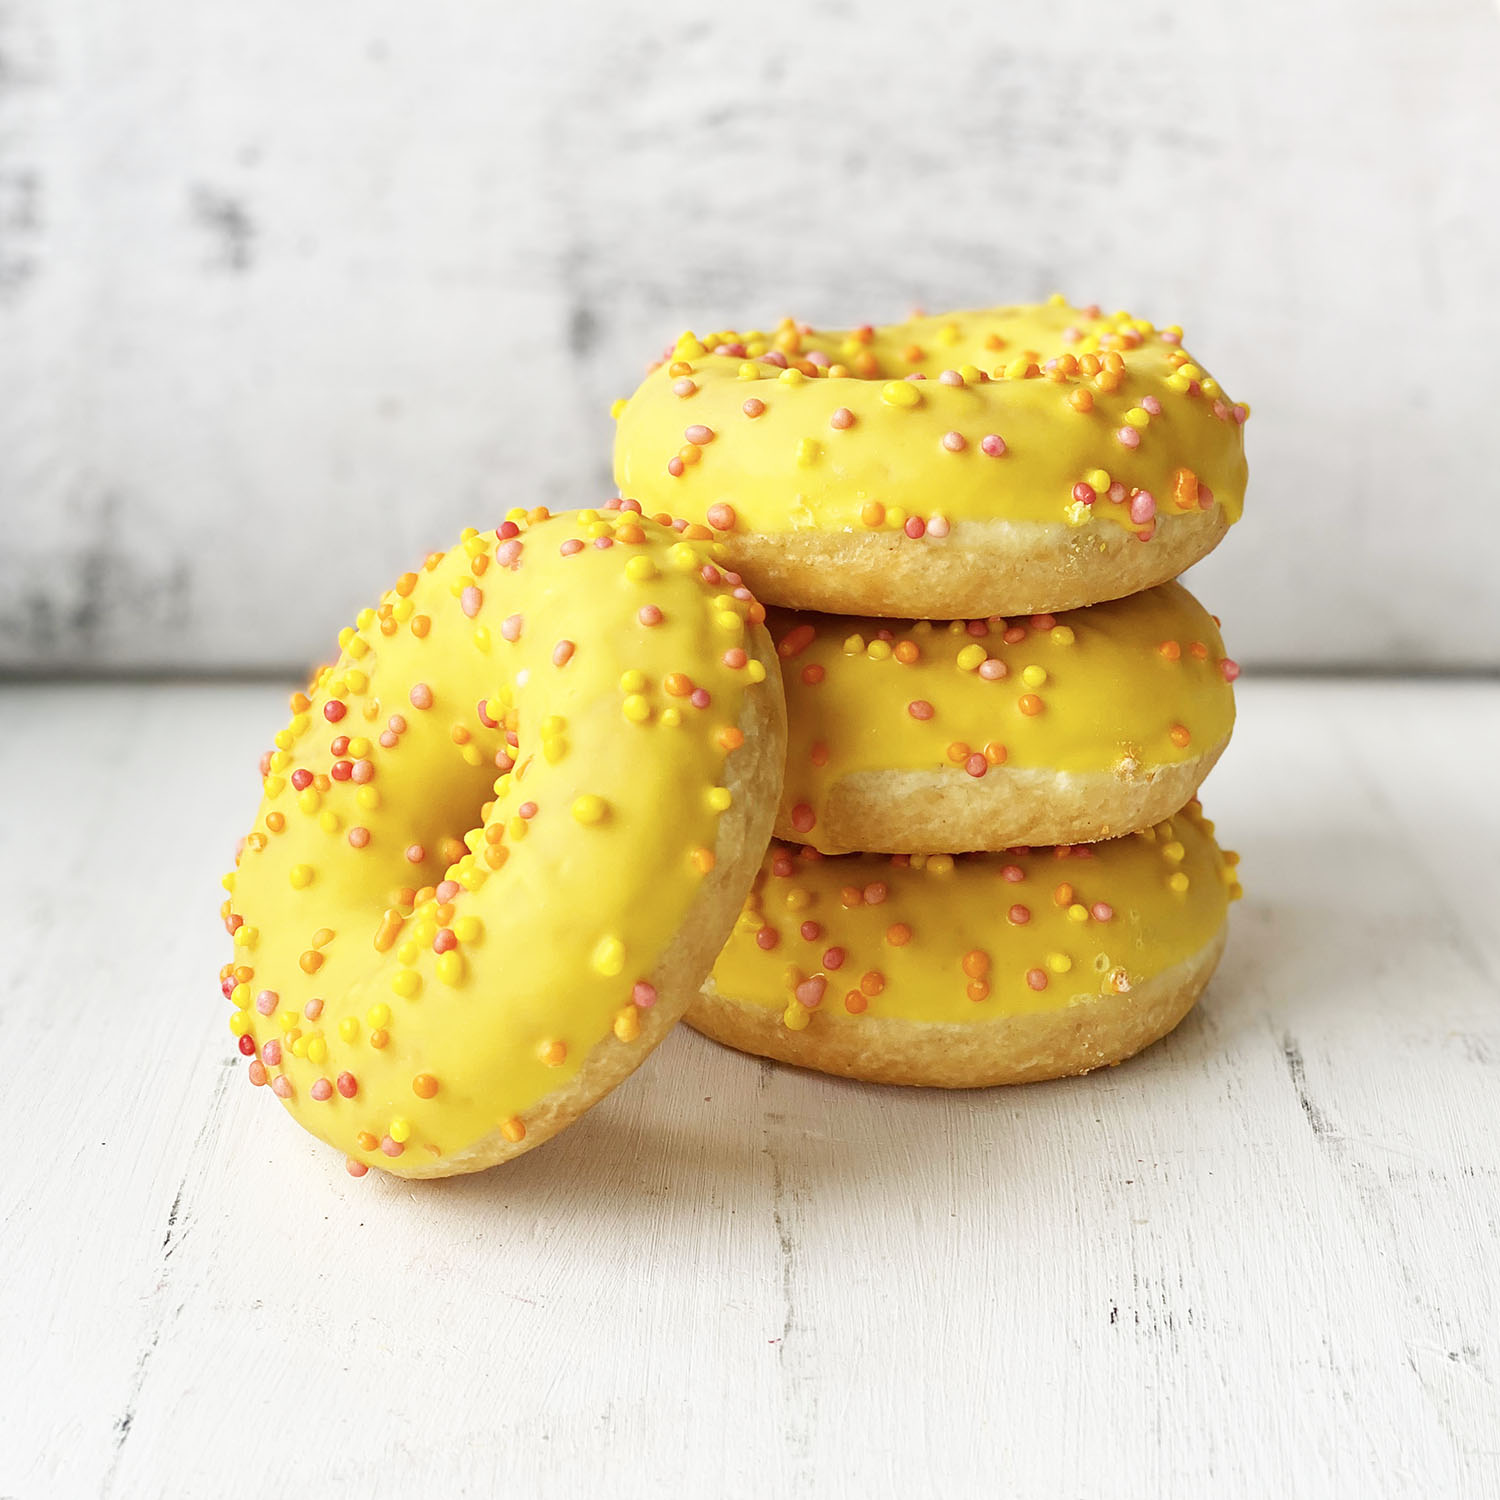 Пончик с желтой глазурью, цветной посыпкой и манговой начинкой изображение 3